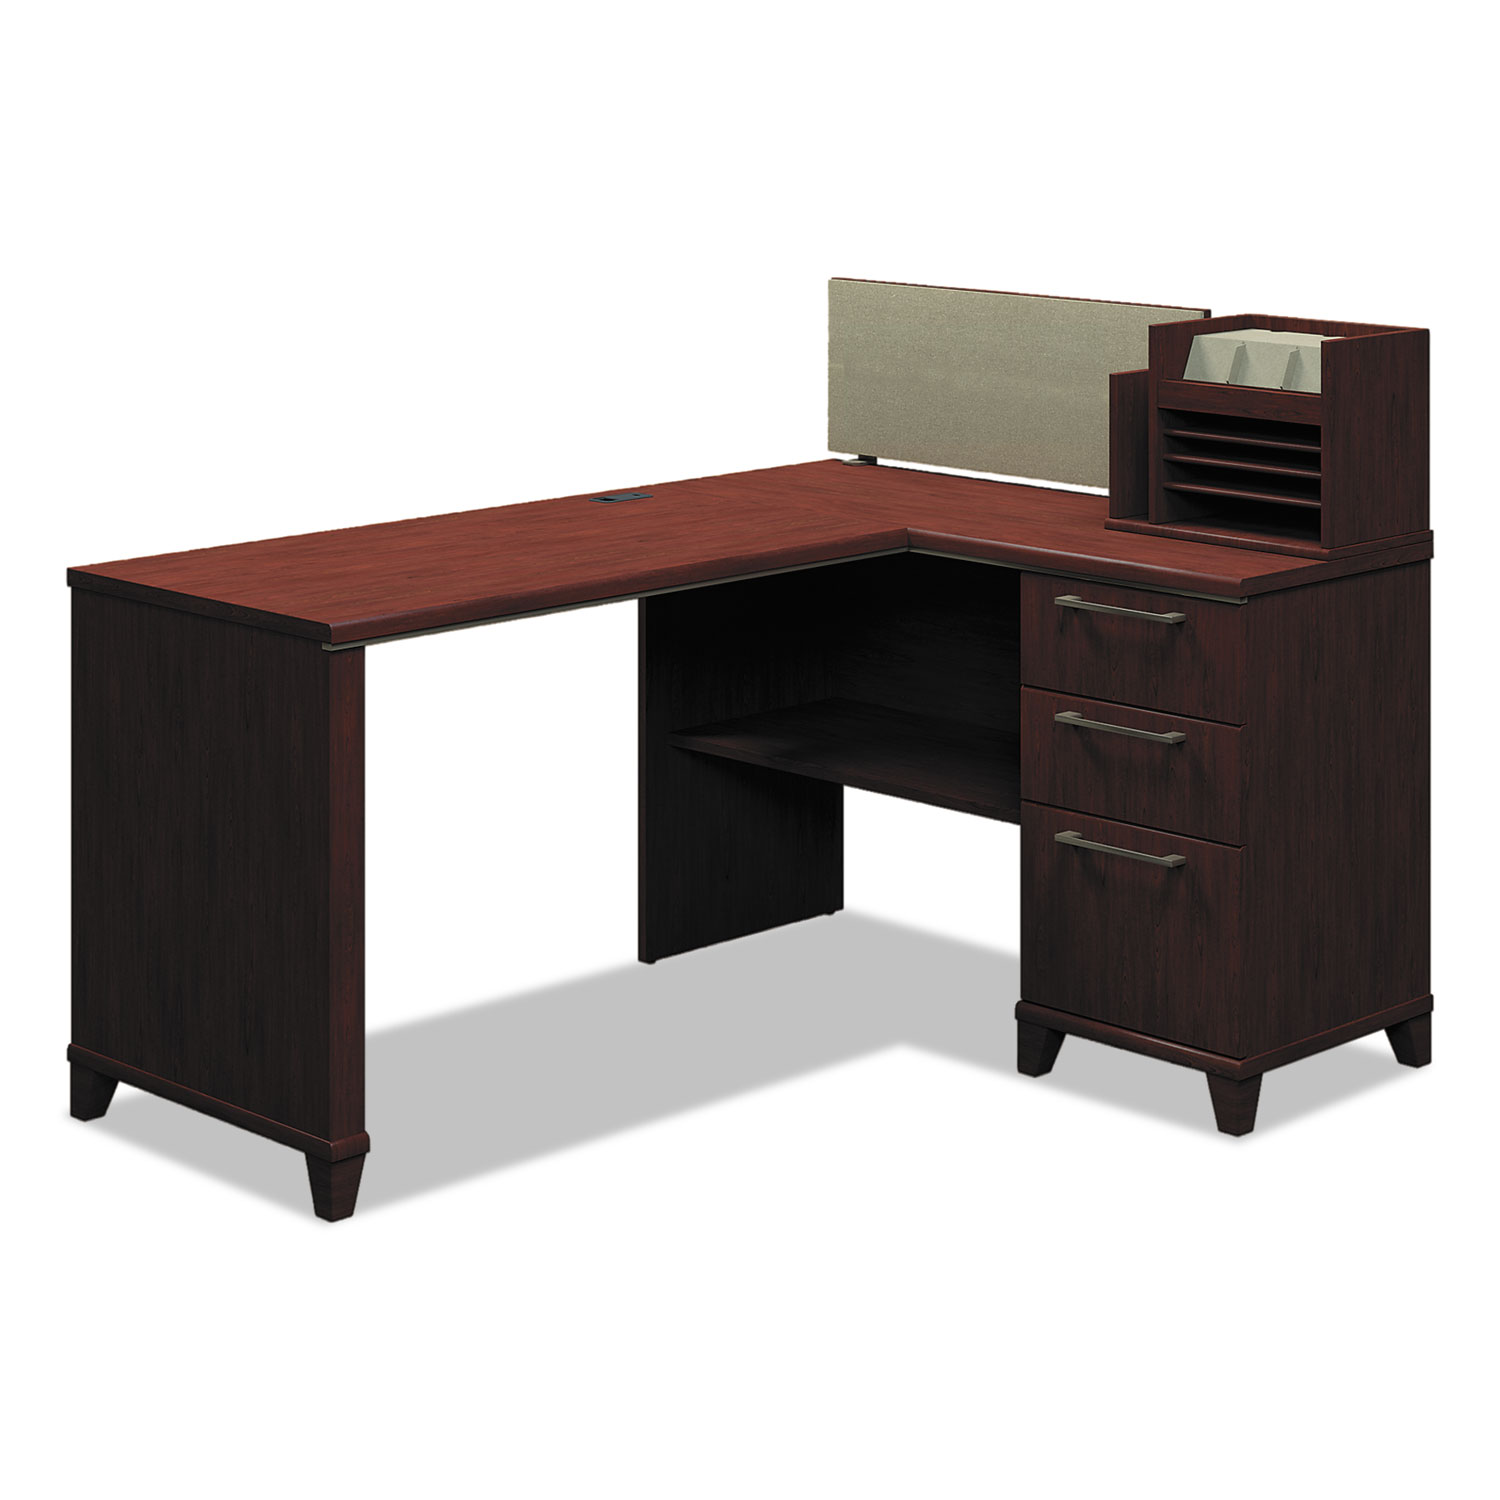 Enterprise Collection 60W x 47D Corner Desk, Harvest Cherry (Box 2 of 2)